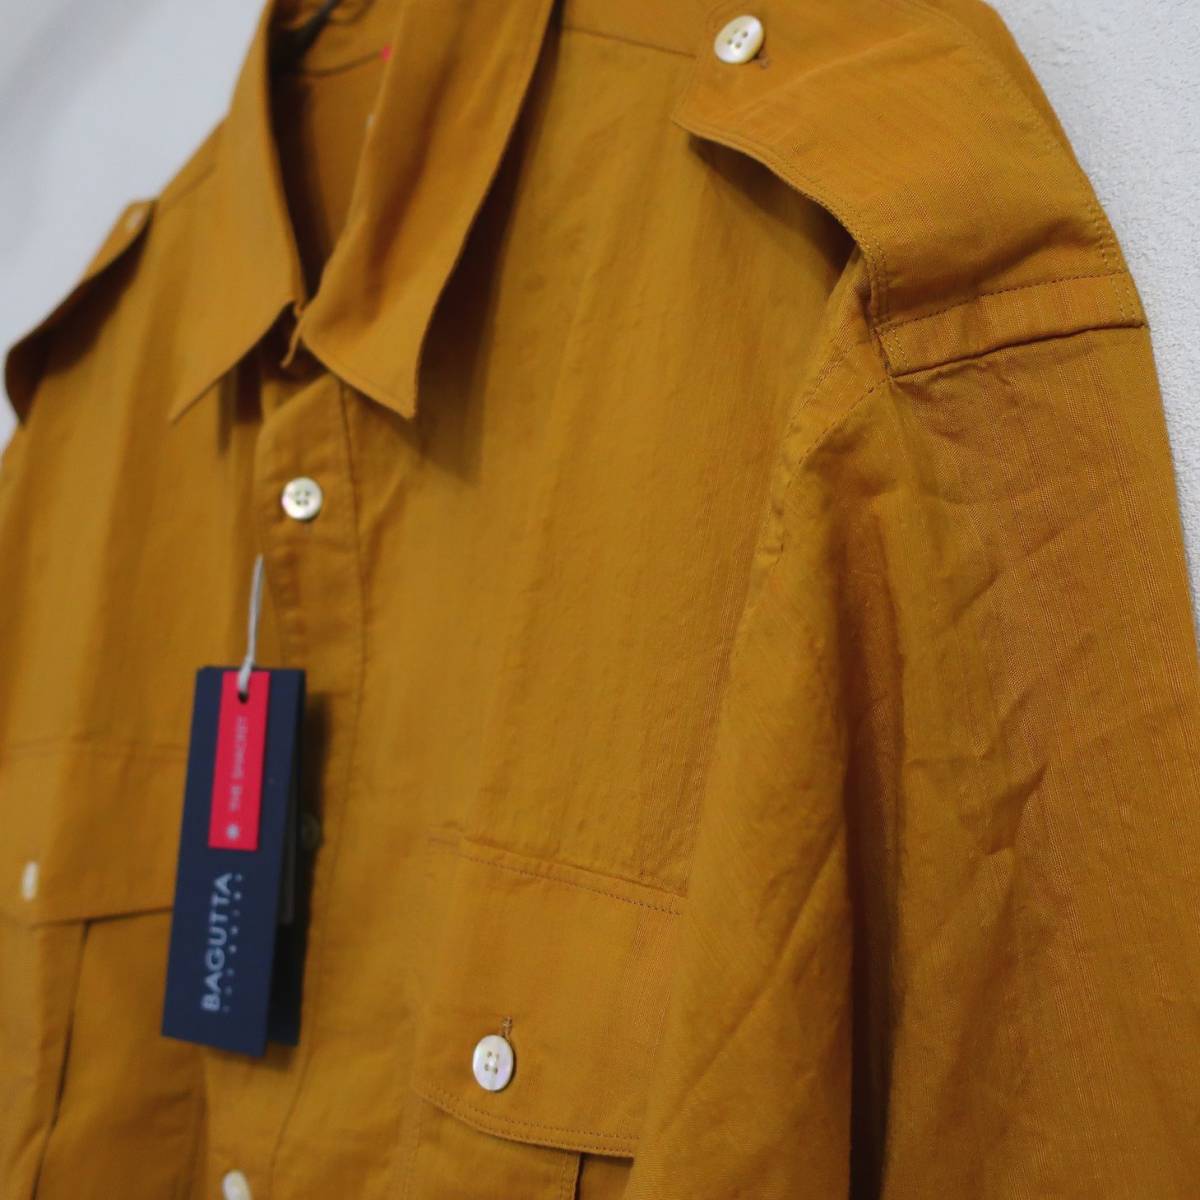 新品 未使用 BAGUTTA バグッタ 高級 メンズ サファリシャツ トレンド 長袖シャツ ブラウン カーキ イエロー ボタン シャツ 40 Lサイズ_画像4